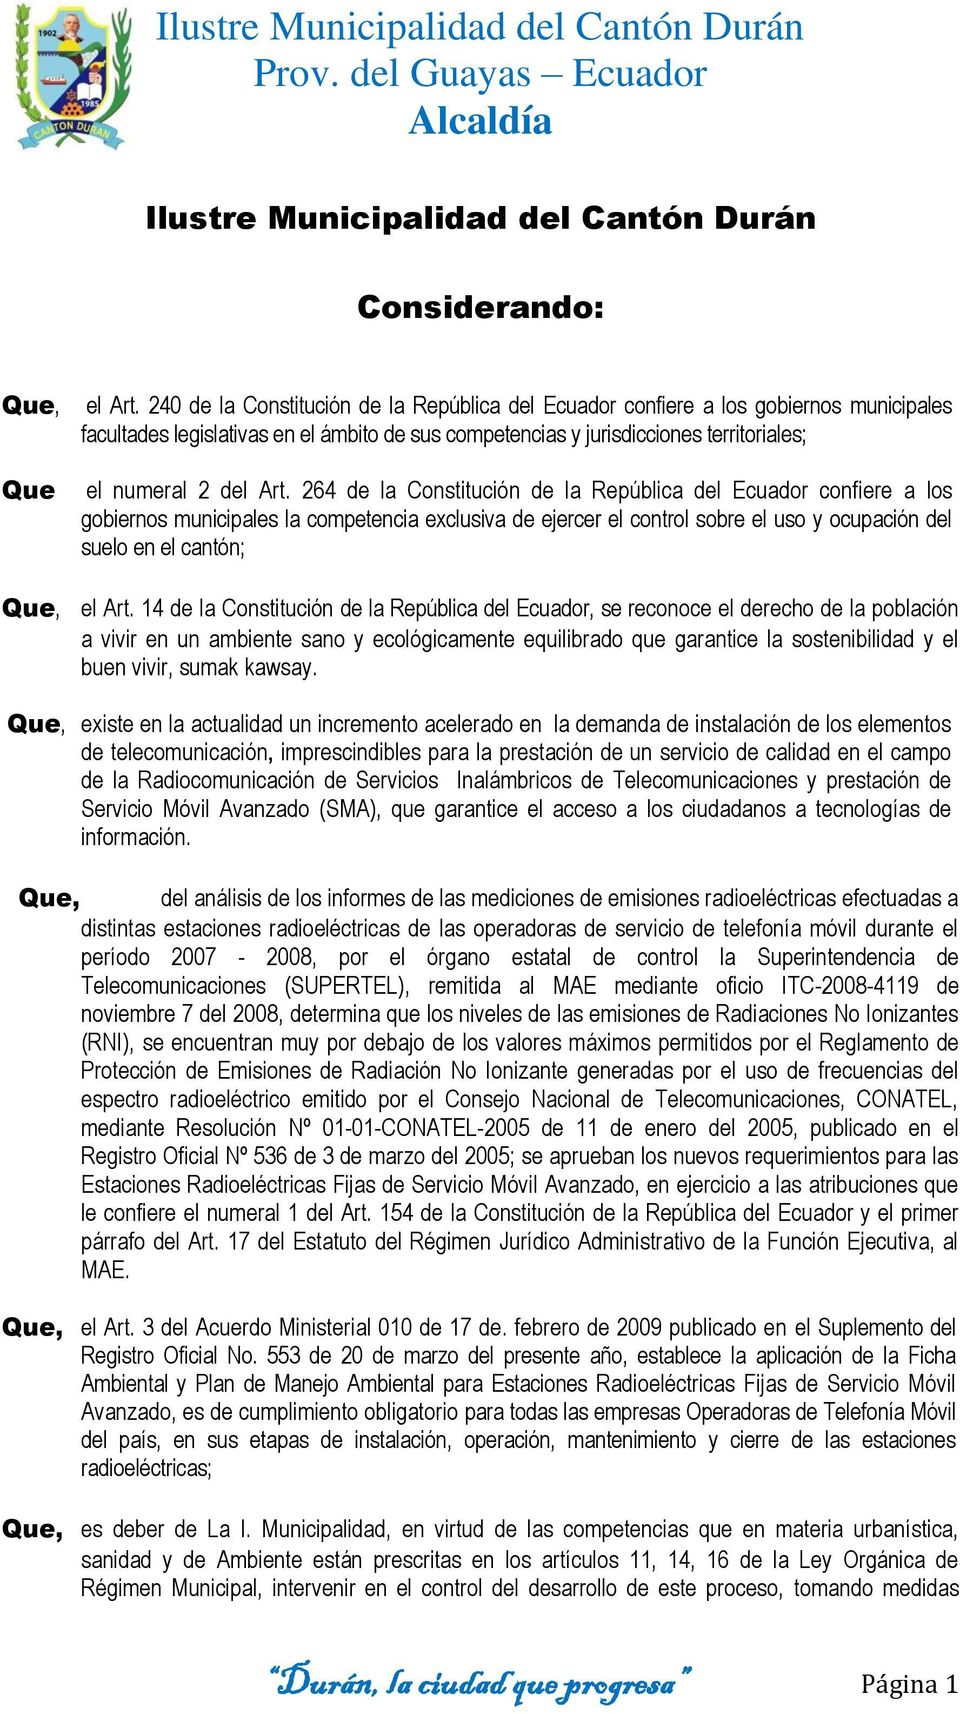 264 de la Constitución de la República del Ecuador confiere a los gobiernos municipales la competencia exclusiva de ejercer el control sobre el uso y ocupación del suelo en el cantón; el Art.